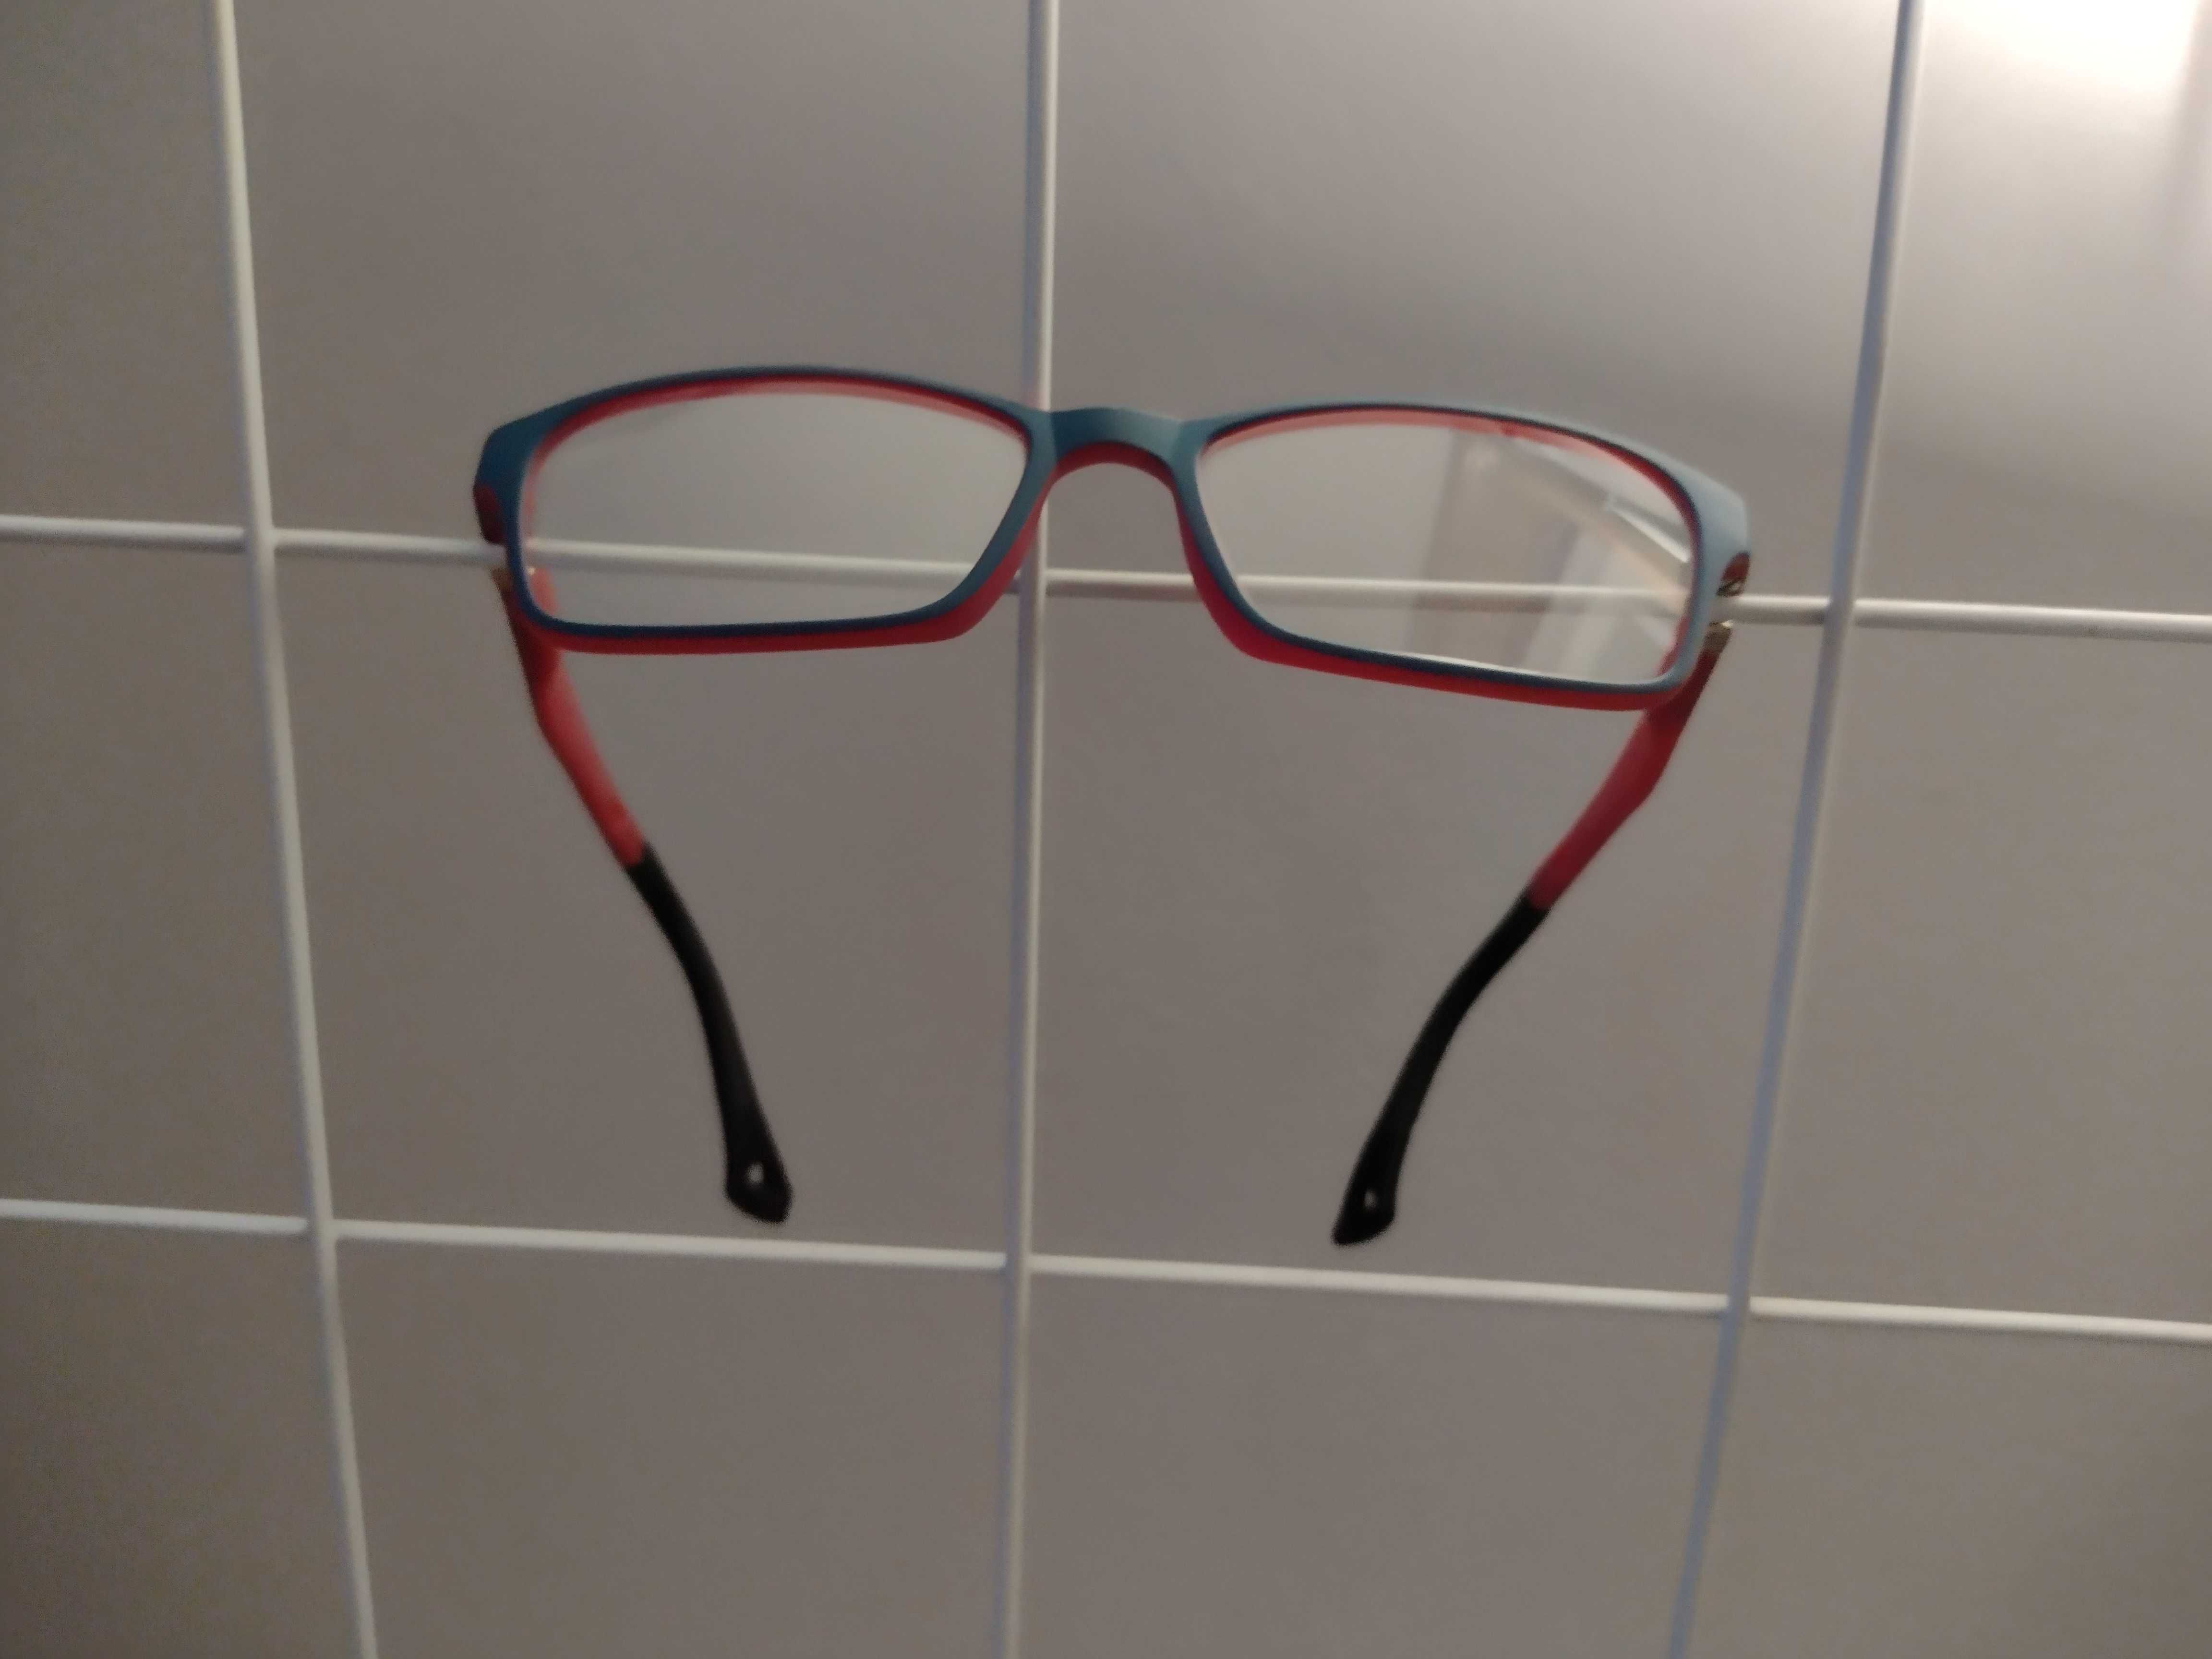 Oprawki do okularów dla dziecka